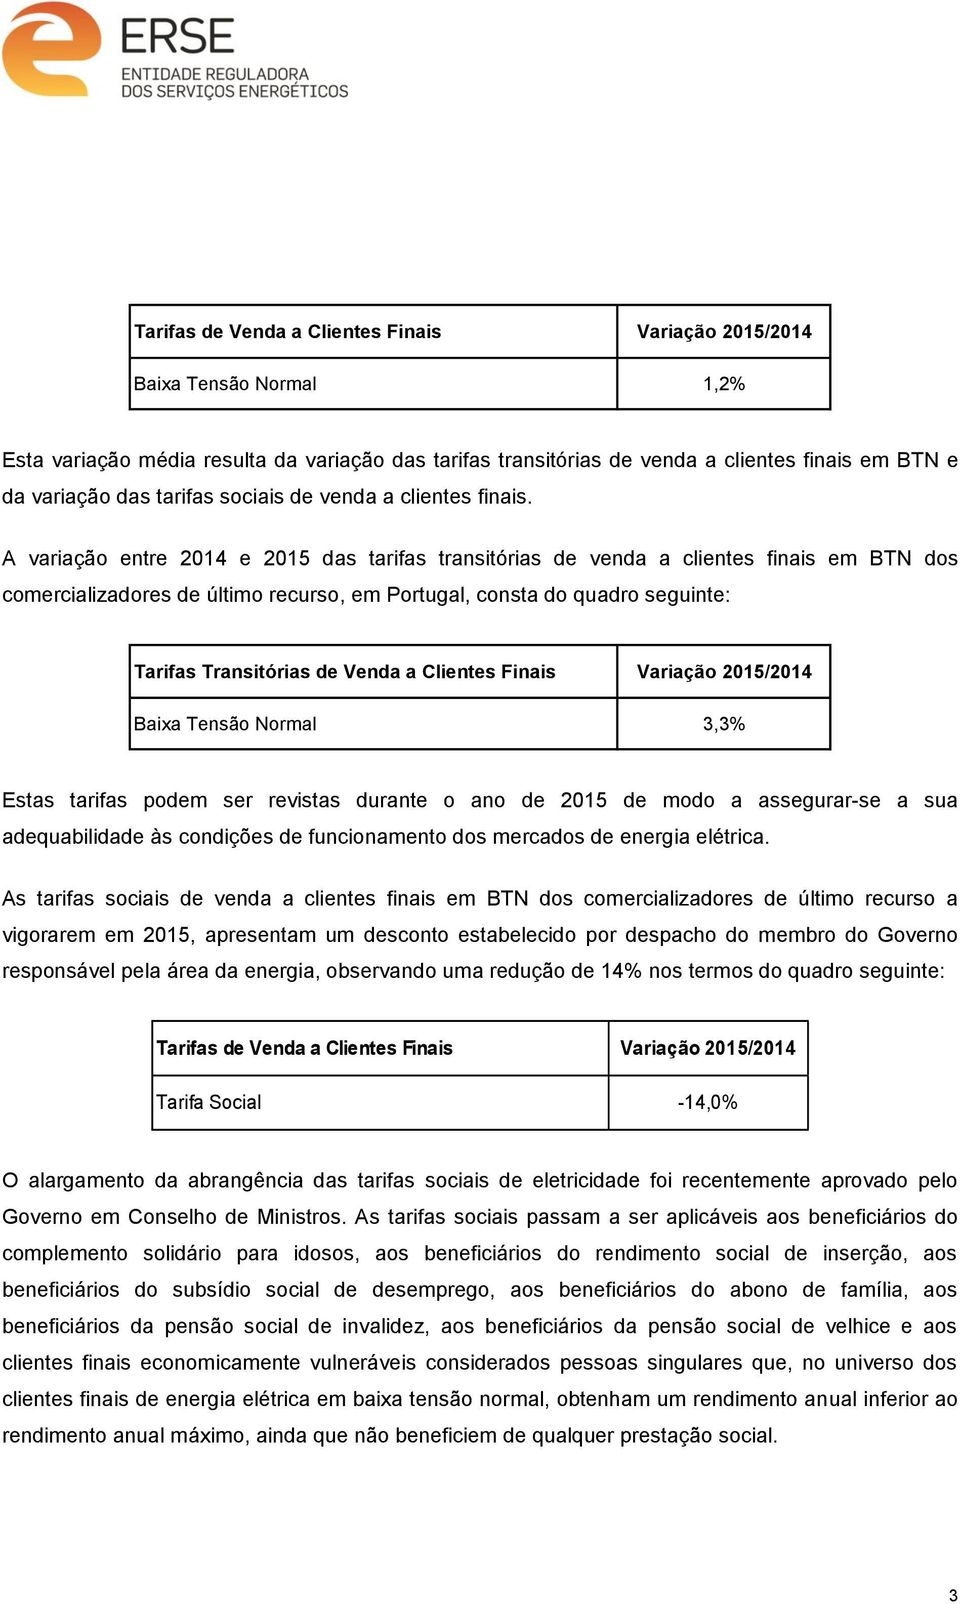 A variação entre 2014 e 2015 das tarifas transitórias de venda a clientes finais em BTN dos comercializadores de último recurso, em Portugal, consta do quadro seguinte: Tarifas Transitórias de Venda